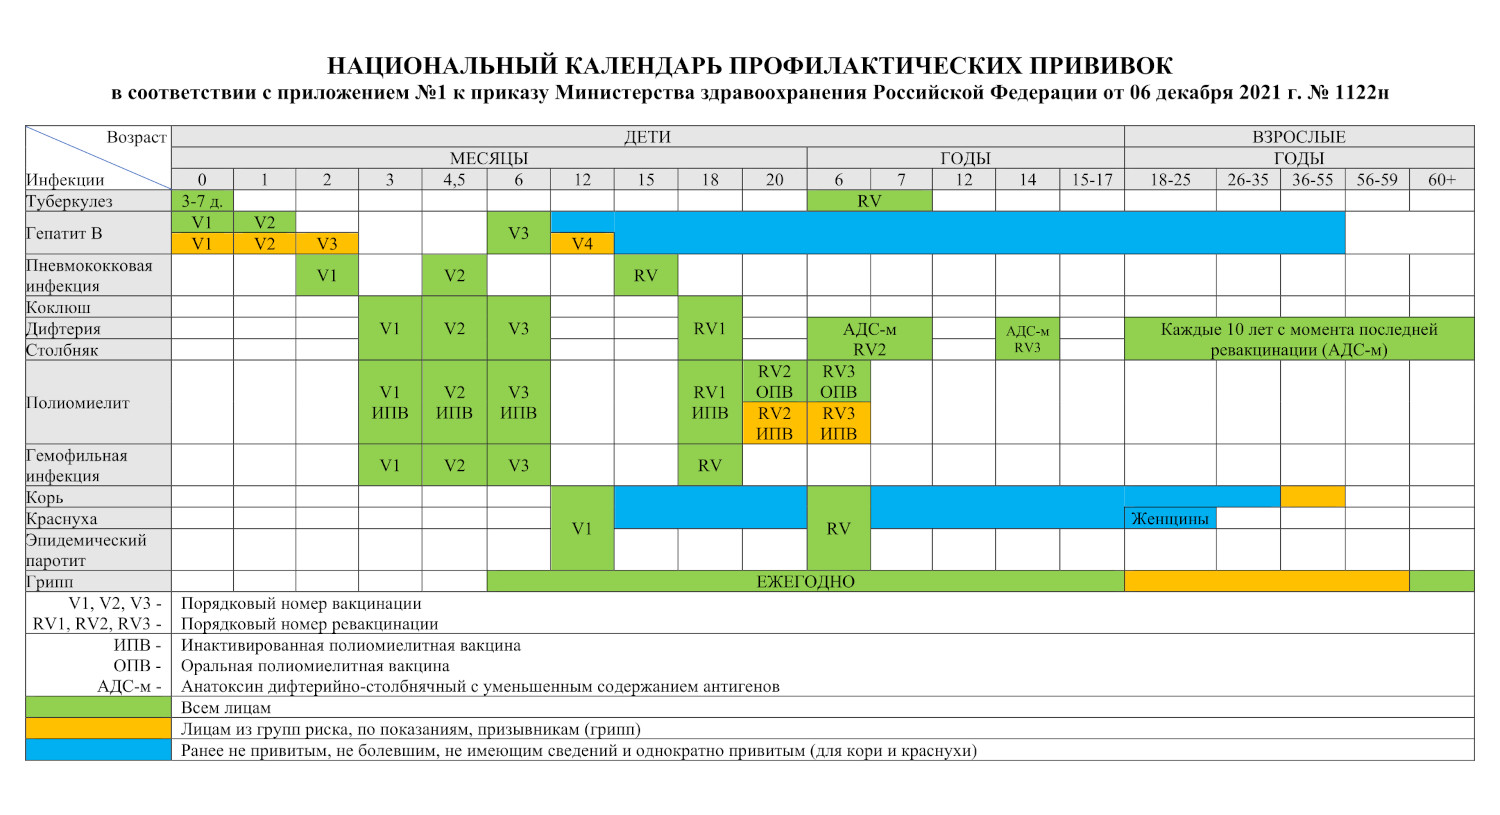 Календарь профилактических прививок